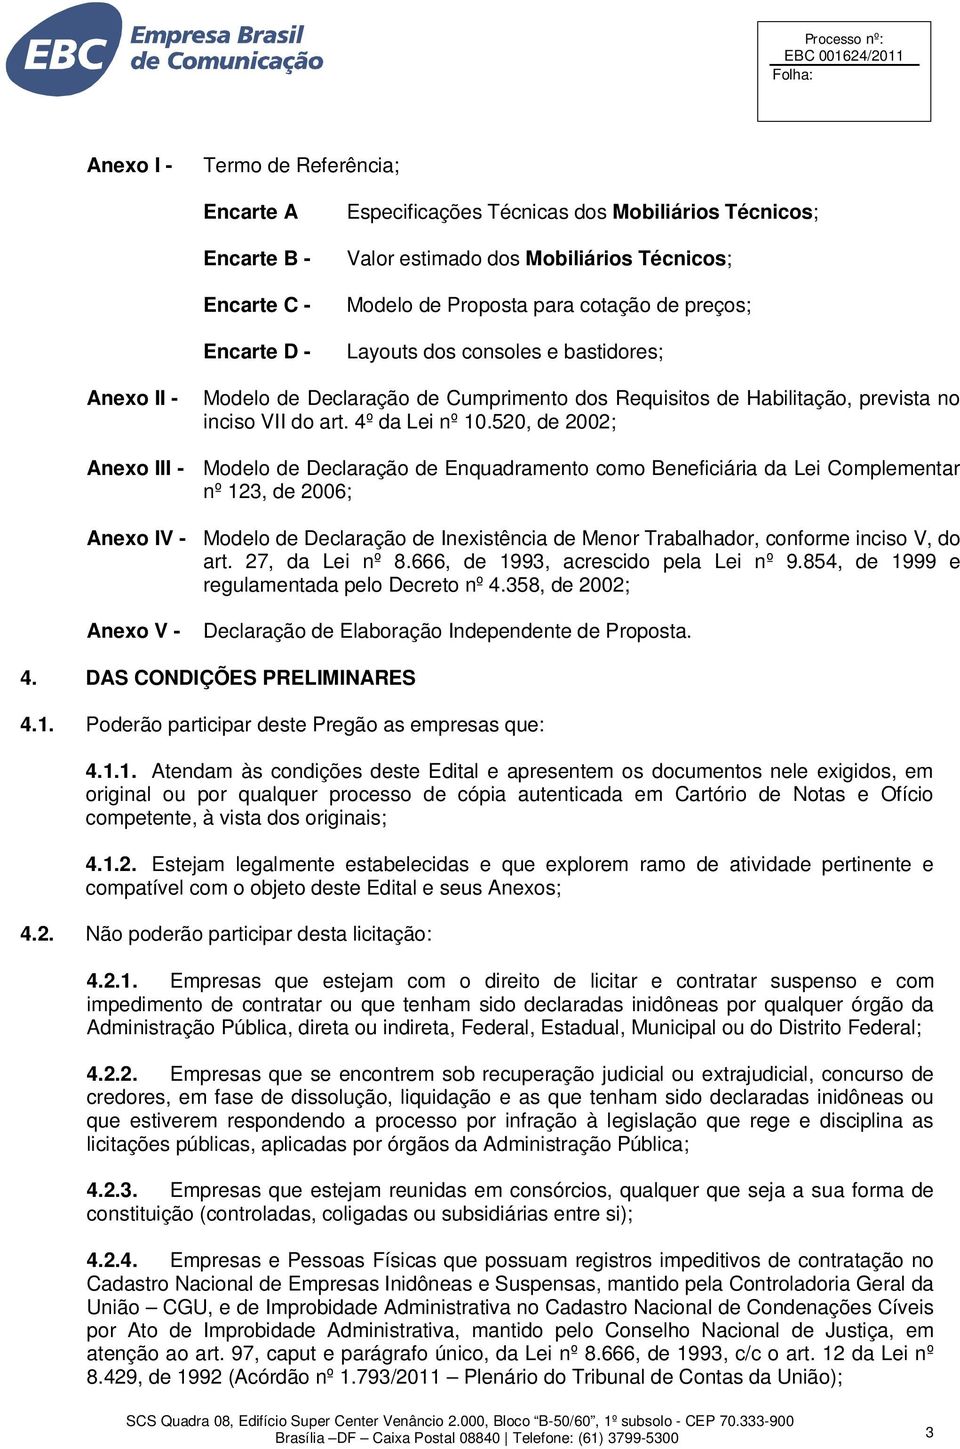 520, de 2002; Anexo III - Modelo de Declaração de Enquadramento como Beneficiária da Lei Complementar nº 123, de 2006; Anexo IV - Modelo de Declaração de Inexistência de Menor Trabalhador, conforme